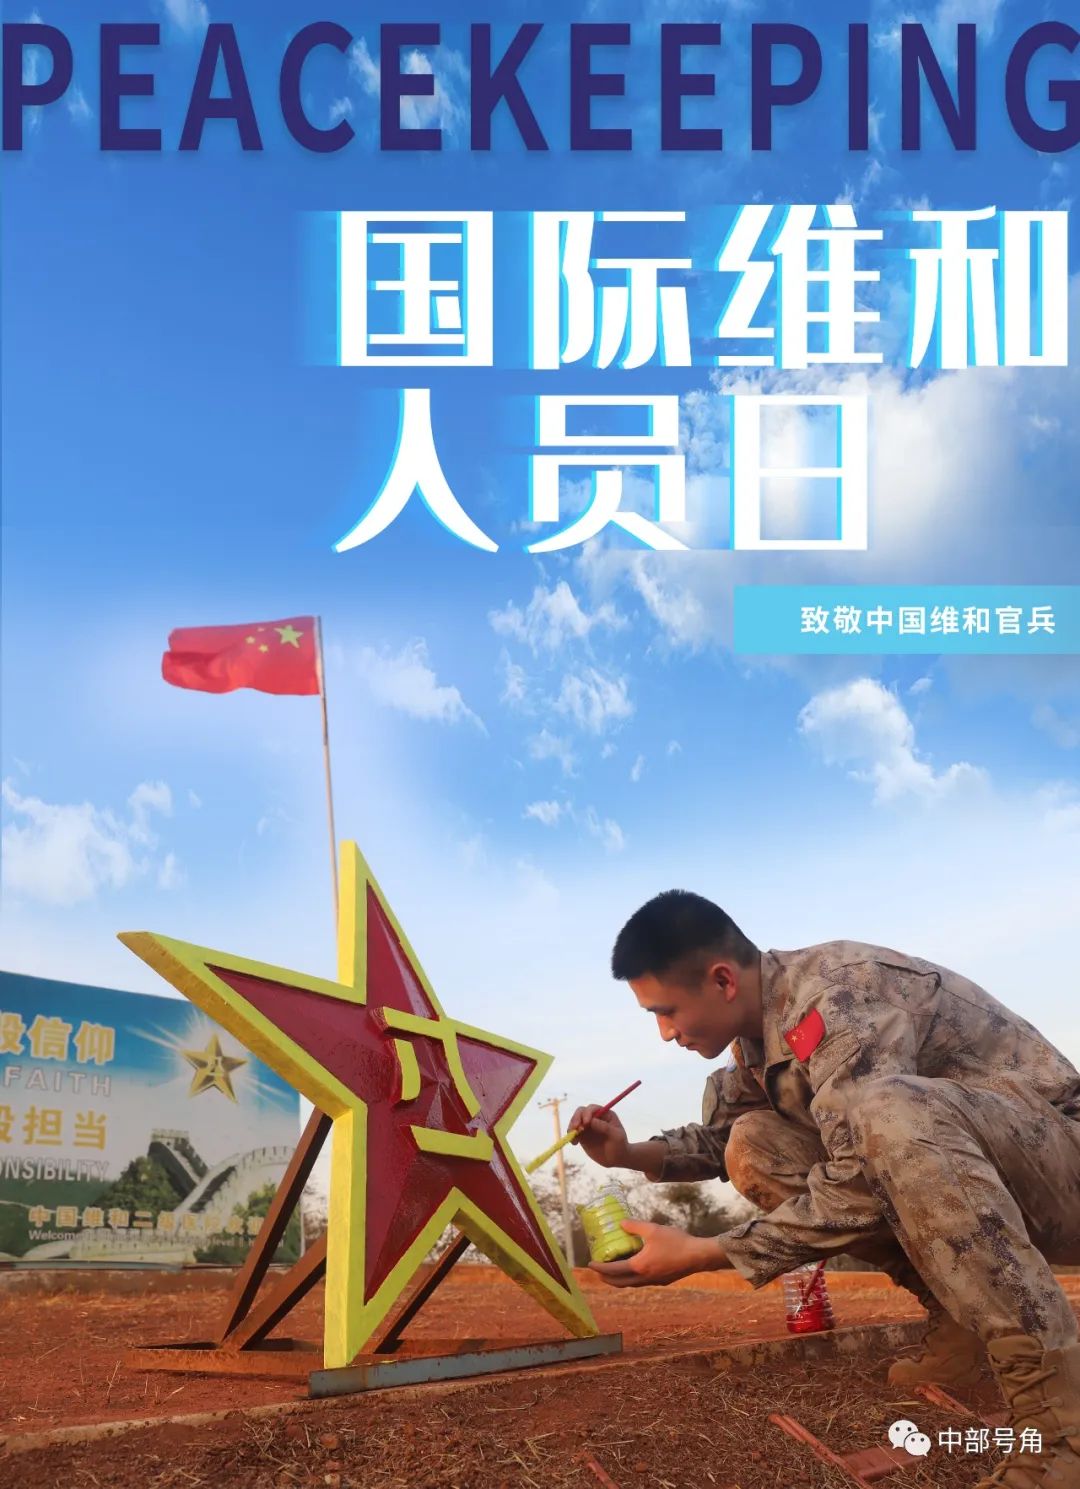 中国赴马里维和工兵分队举行仪式祭奠维和烈士申亮亮 -盐城新闻网